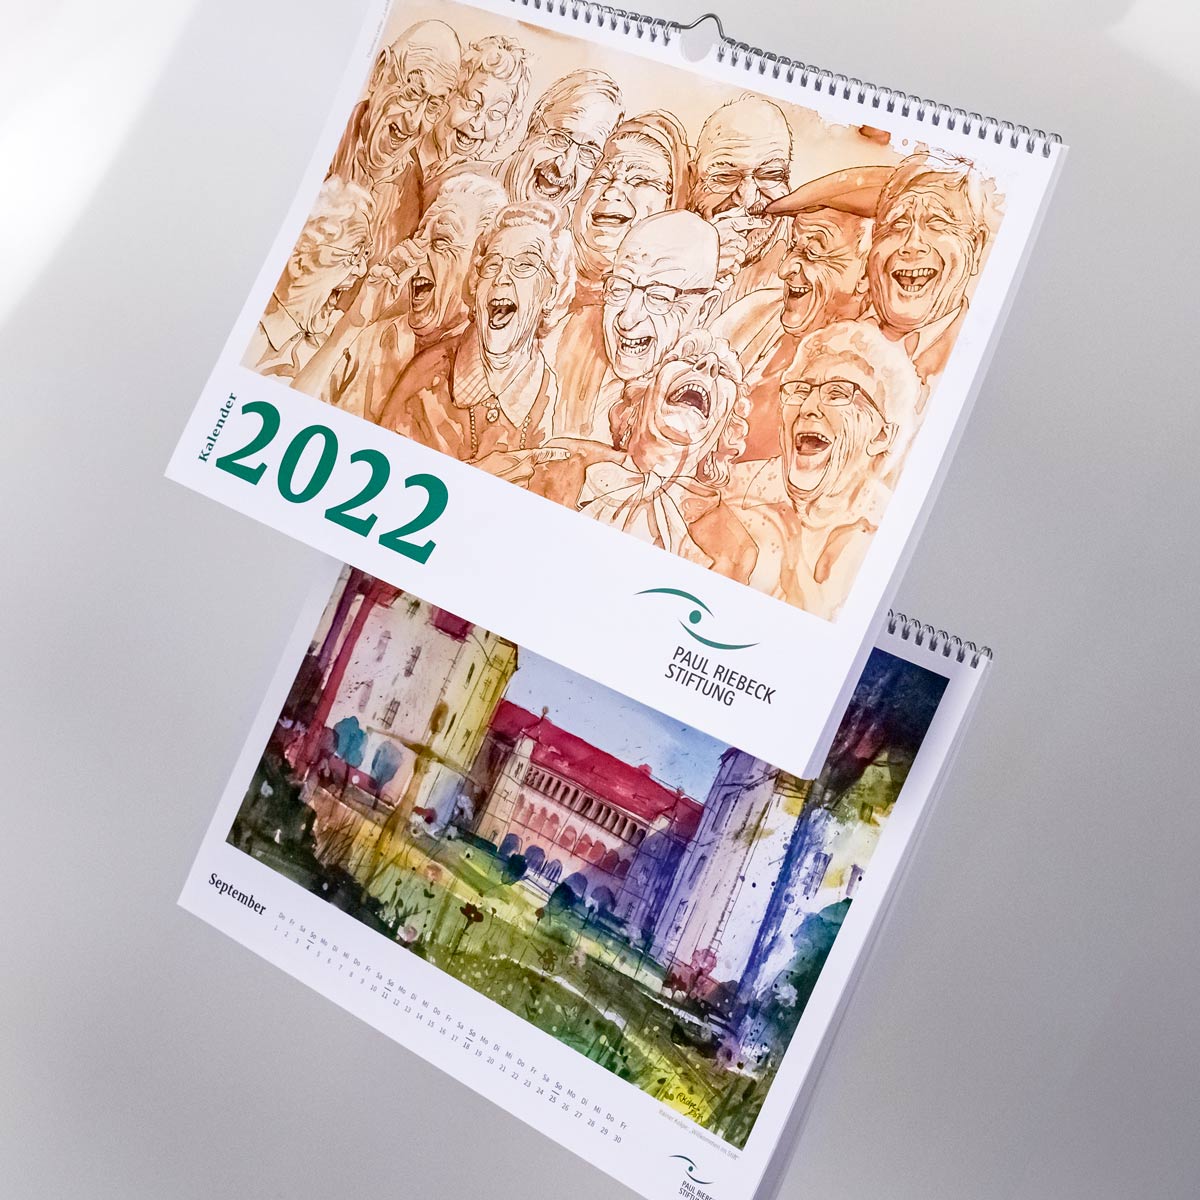 Paul-Riebeck-Stiftung – Kunstkalender 2022